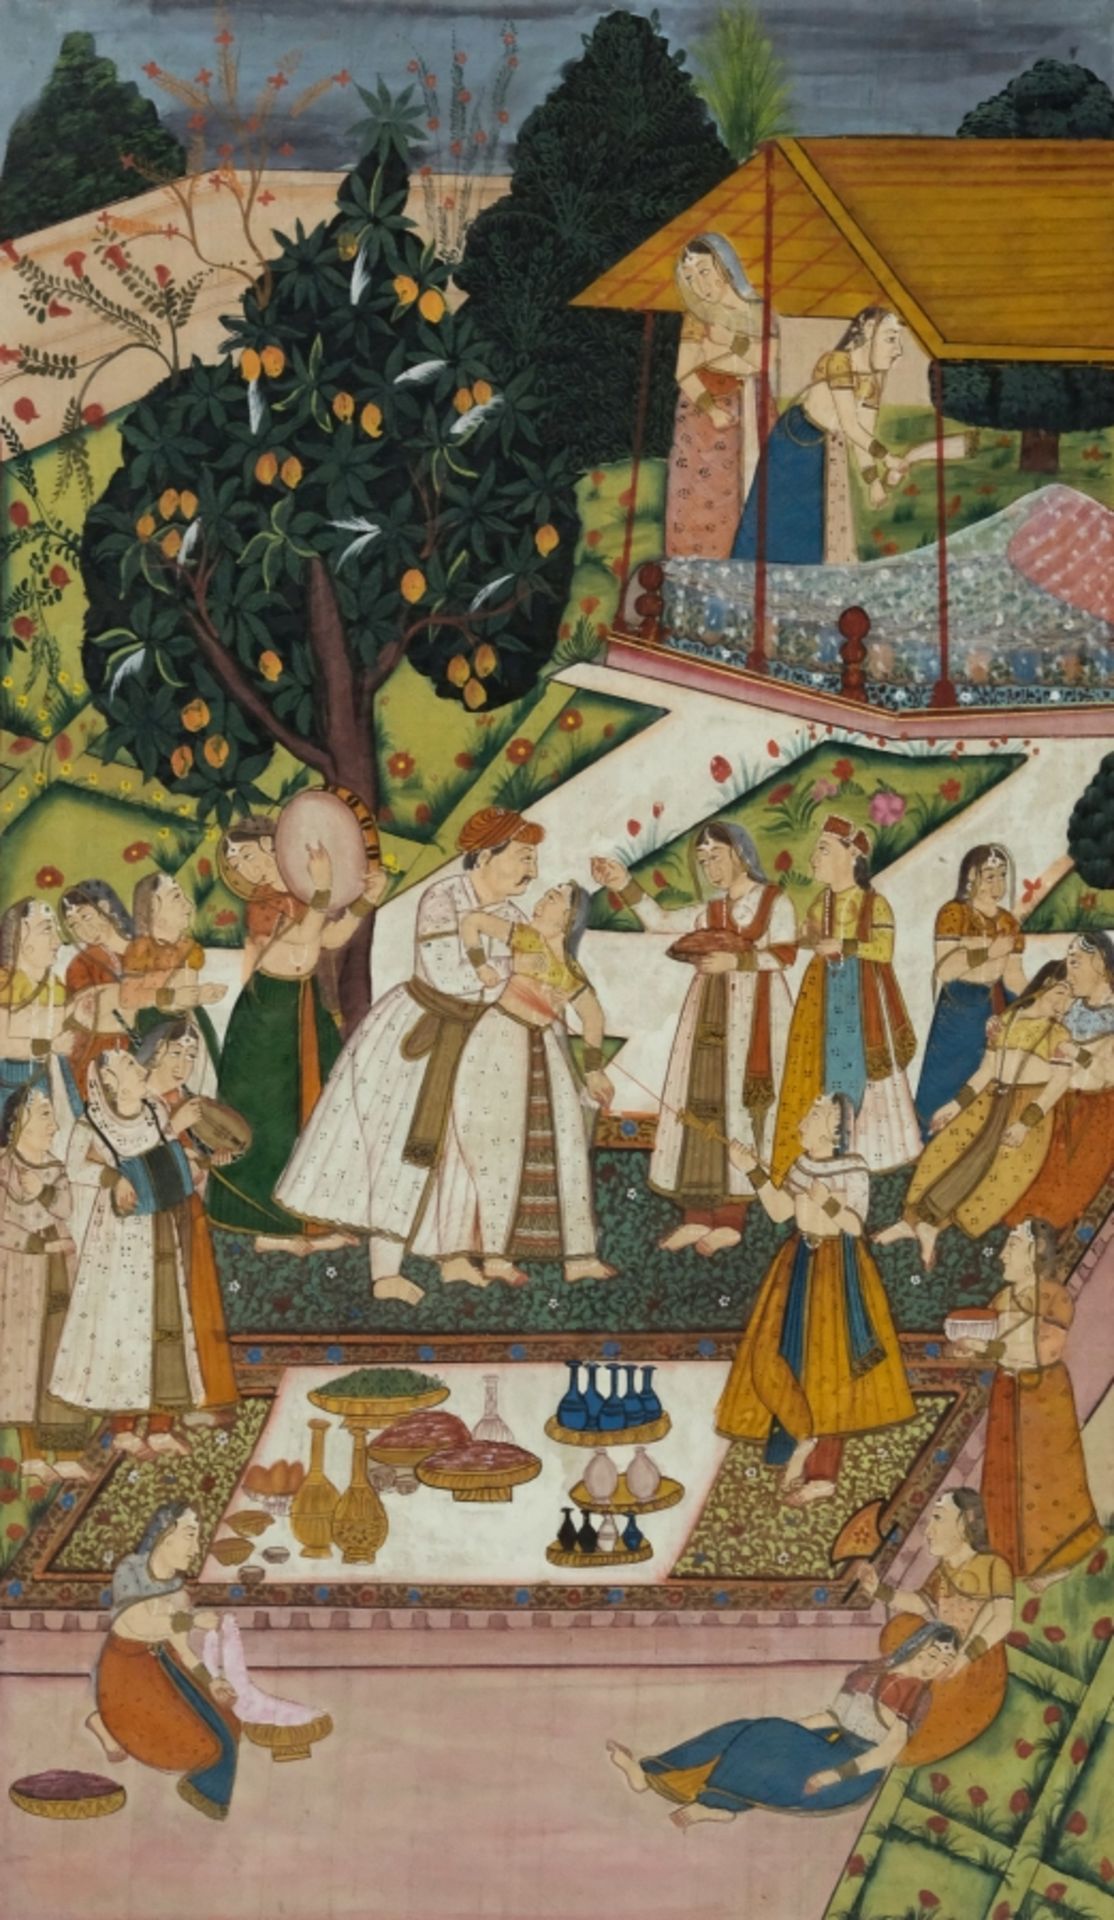 INDIEN, Hochzeitsszene am Hofe eines Mogulherrschers, Deckfarben auf Seide, 101x75cm, wohl 19. Jahr - Bild 2 aus 2